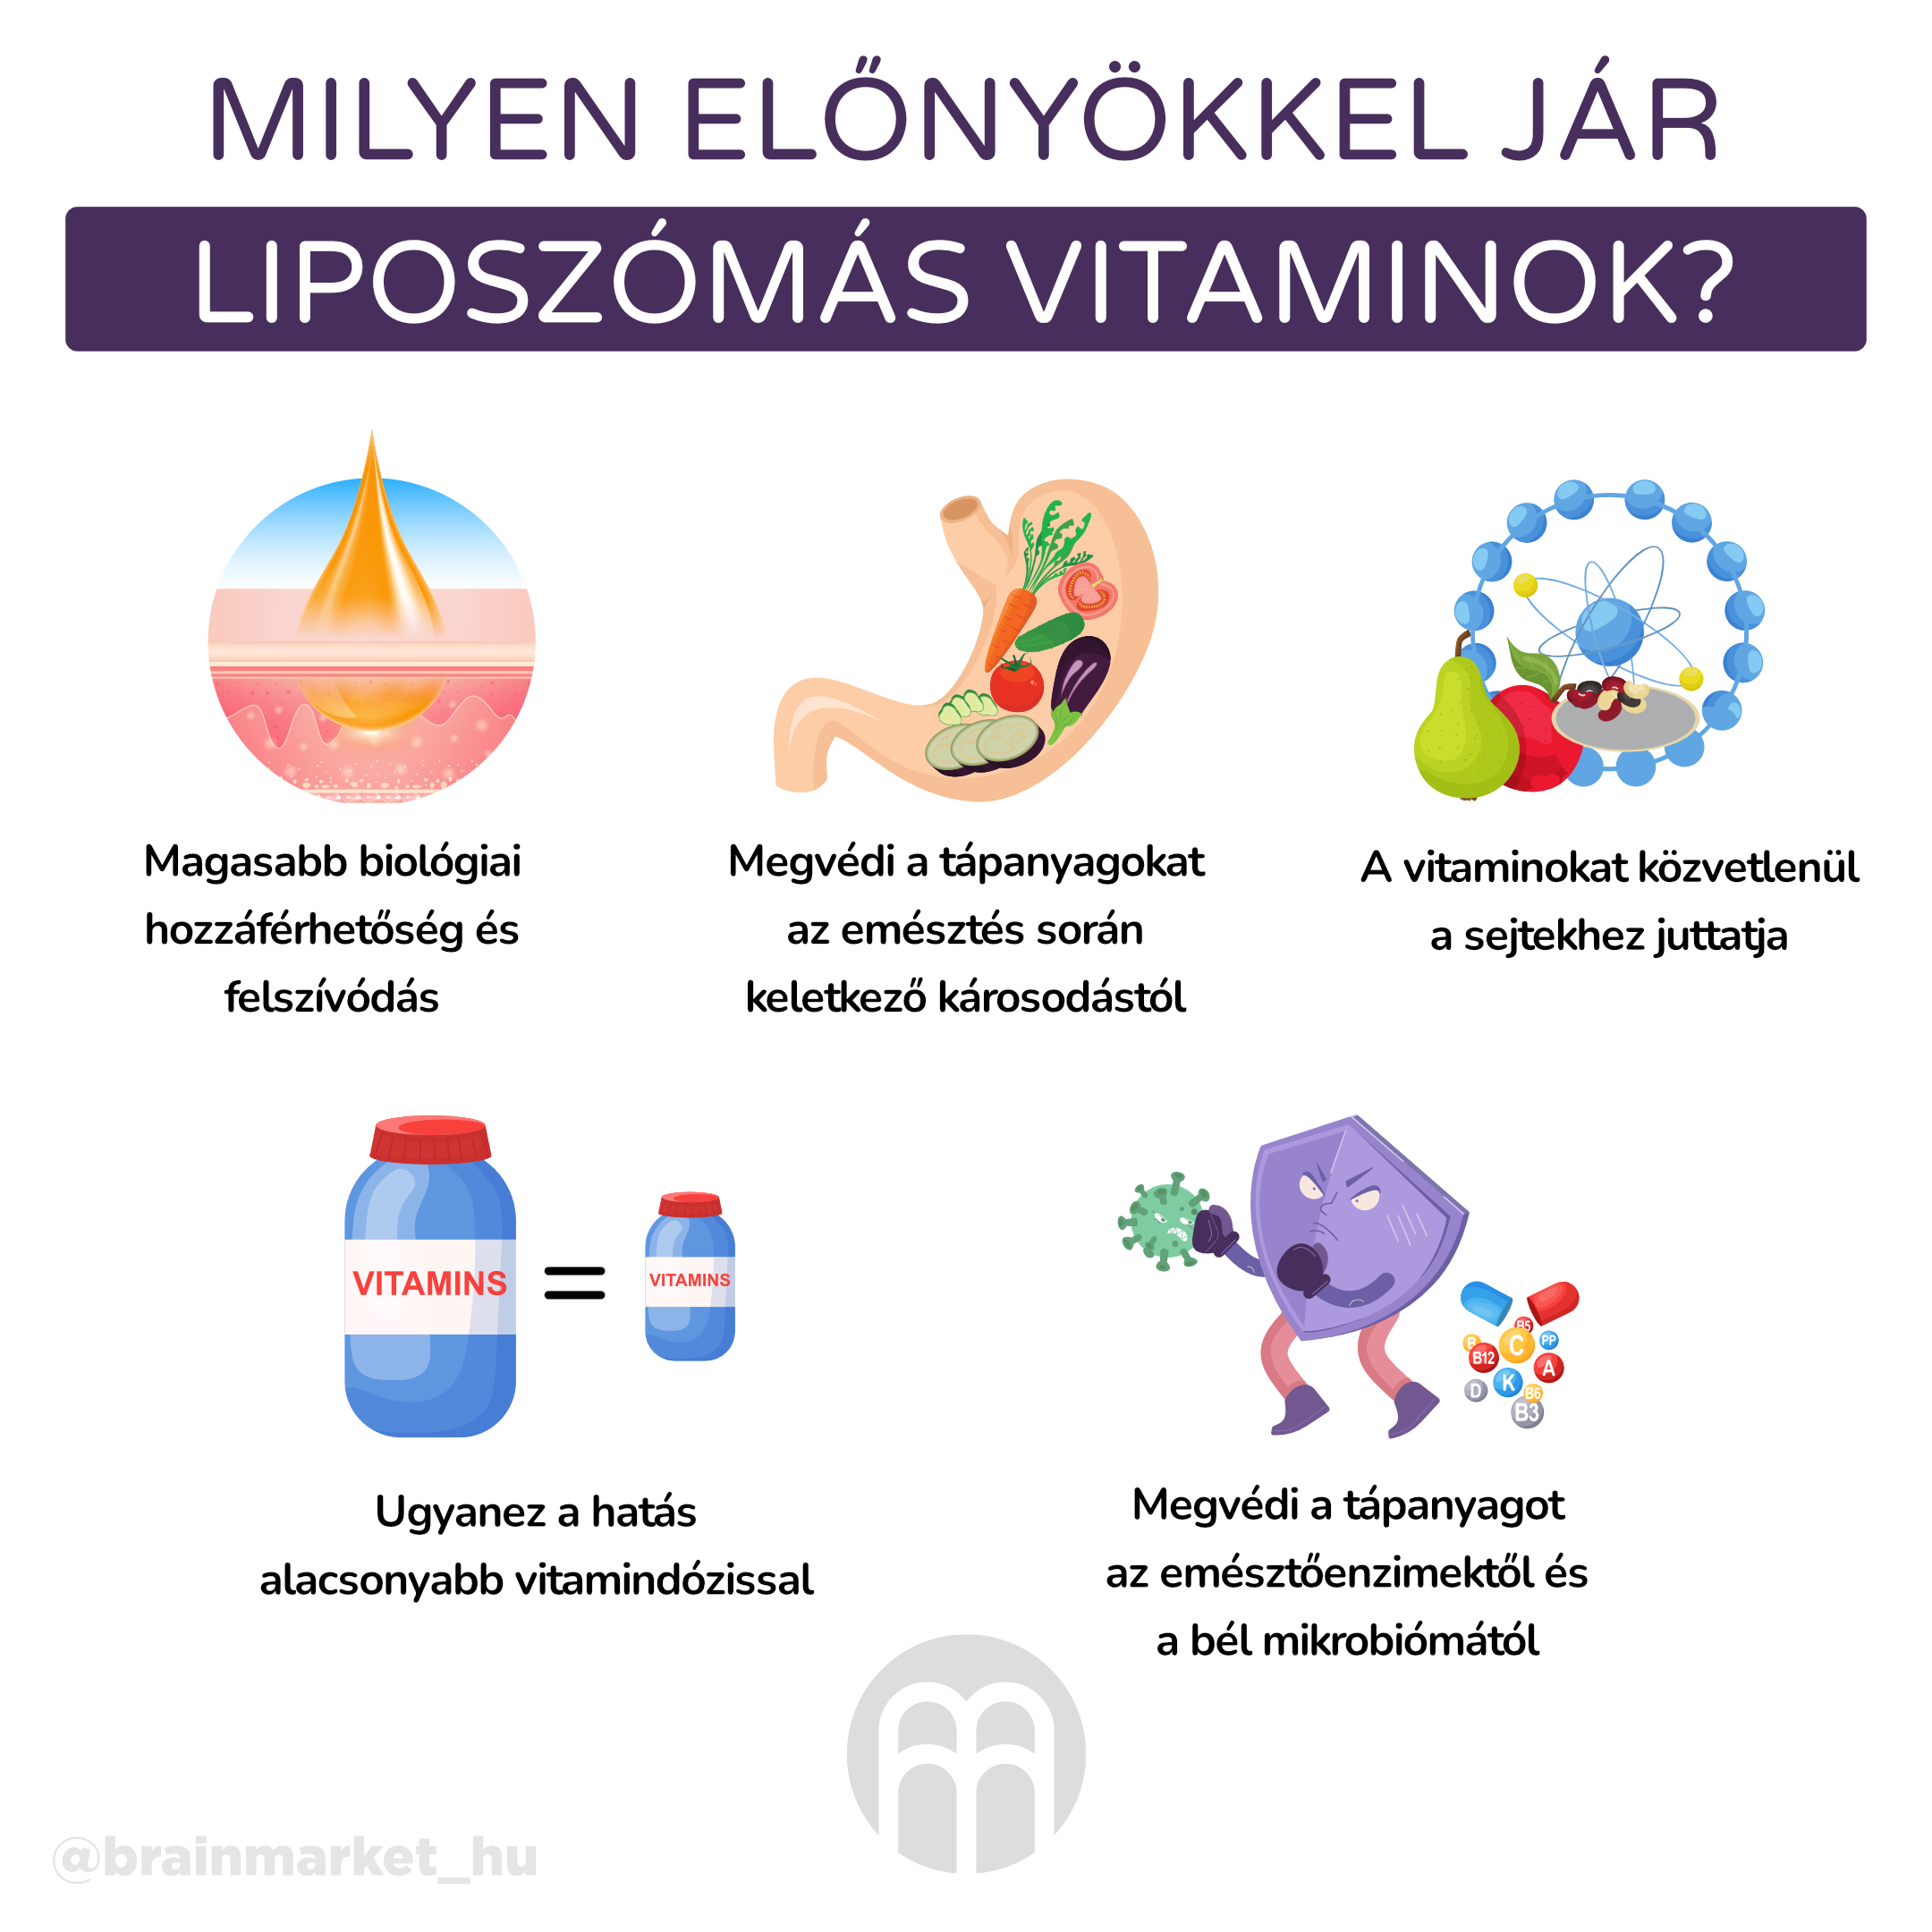 Liposzómális vitaminok. Miért részesítik előnyben a liposzómális formát?